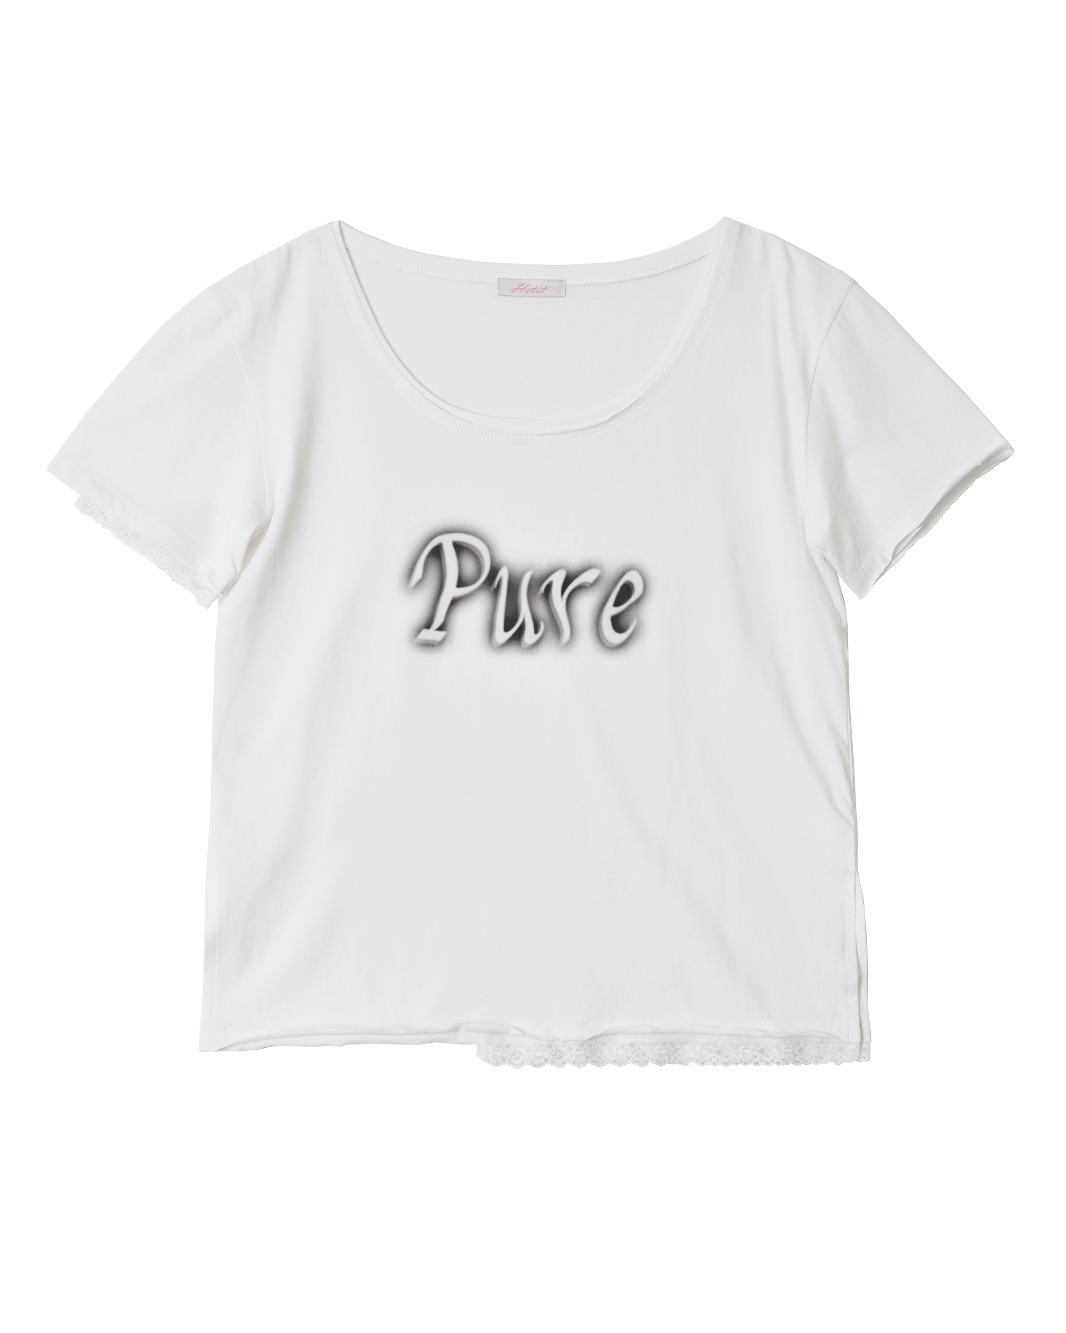 Pure Grunge T-shirt (White)